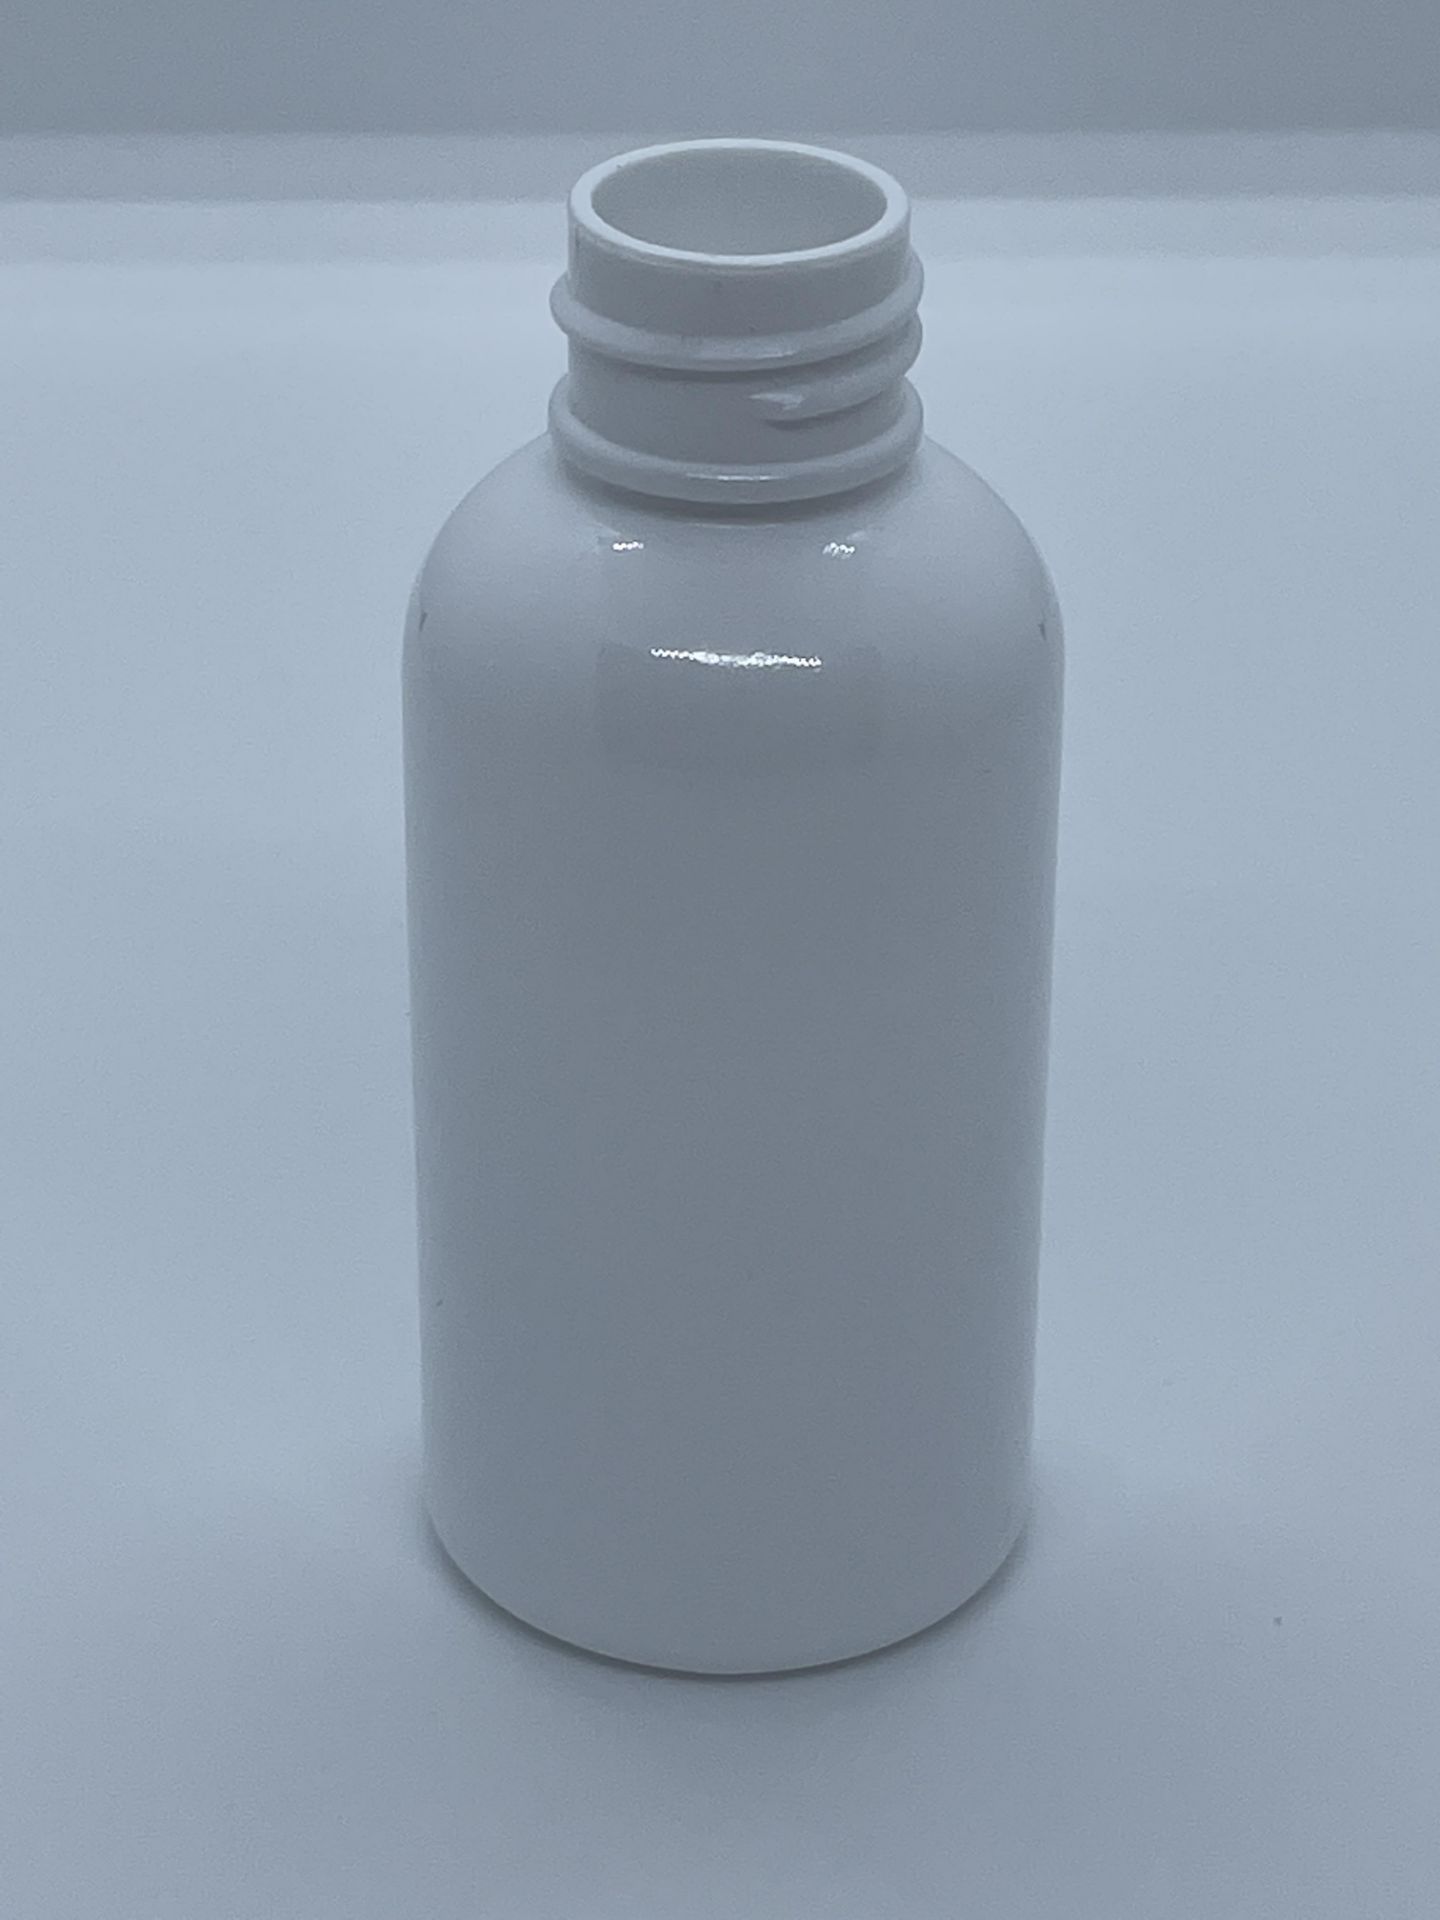 32,000 - White Plastic Bullet 2 oz Empty Bottles, 20-410 Threading Neck, 3.25" Tall, 1.25" Diameter - Image 2 of 8